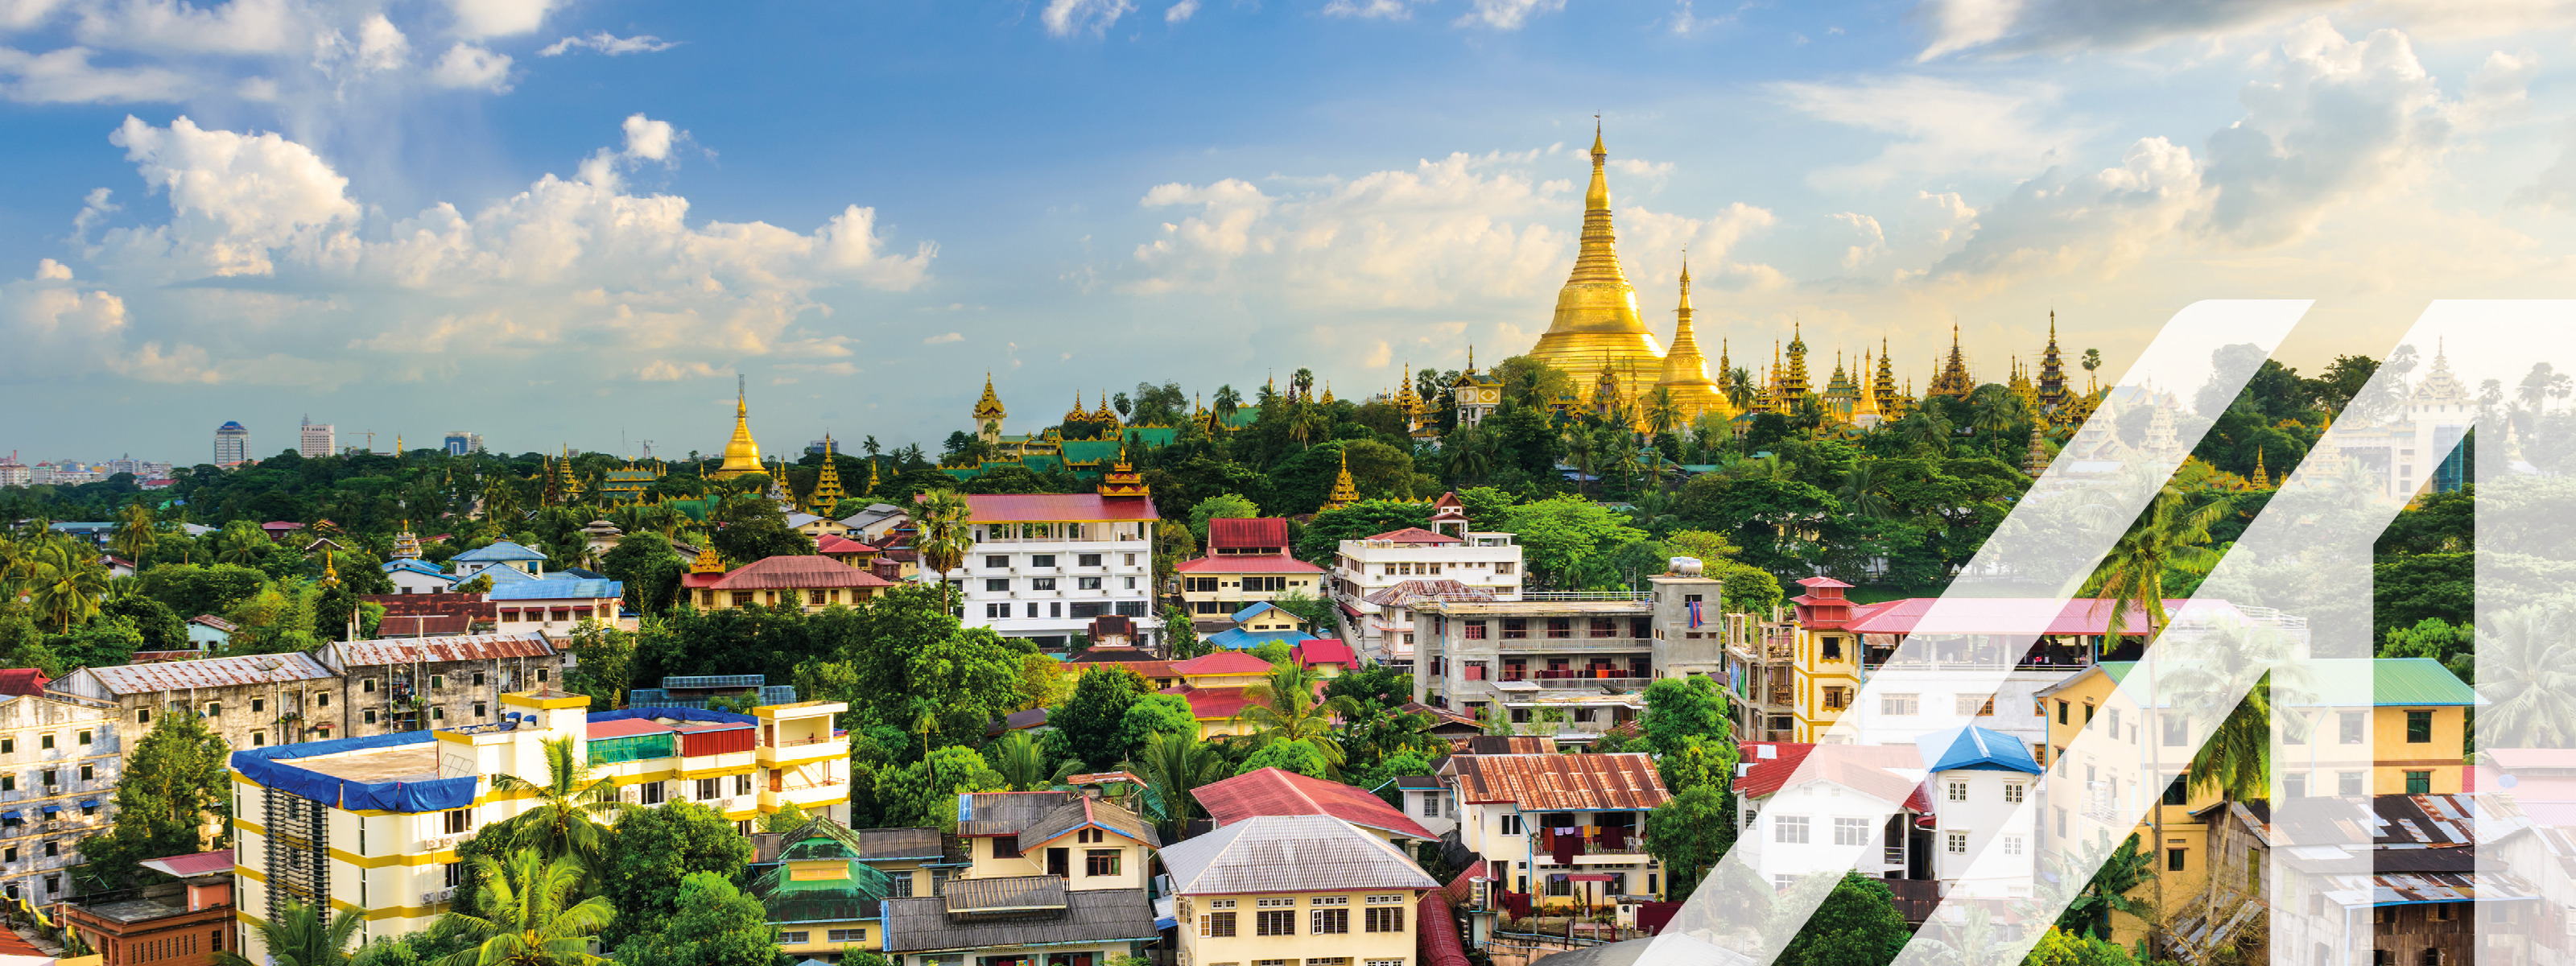 Blick auf Yangon, Hauptstadt von Myanmar. Bunte Häuser und grüne Wälder im Vorderund, im Hintergrund eine goldene Pagode 